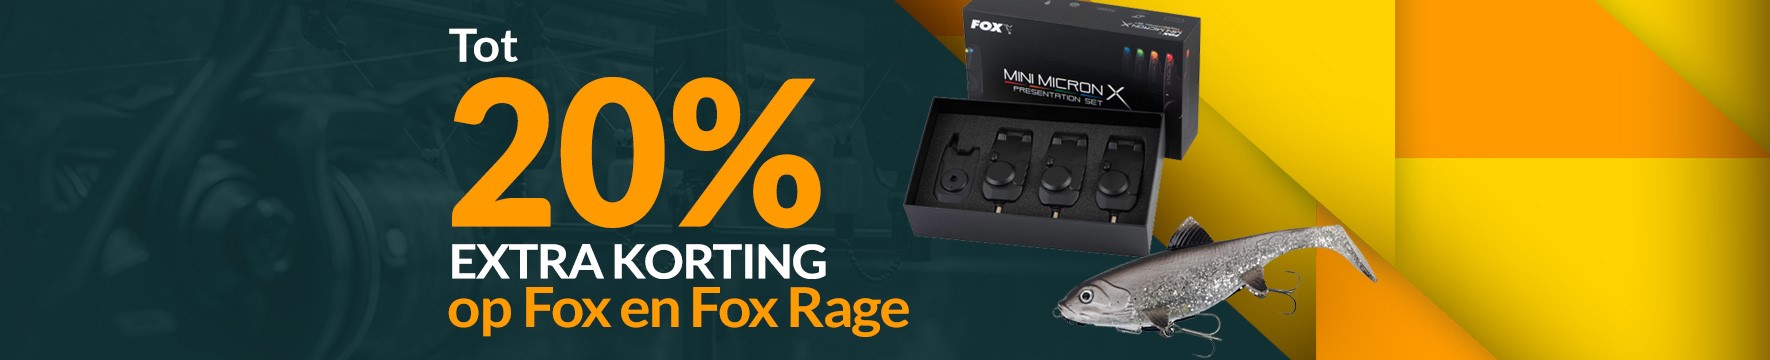 Category Top: Tot 20% Fox en Fox Rage